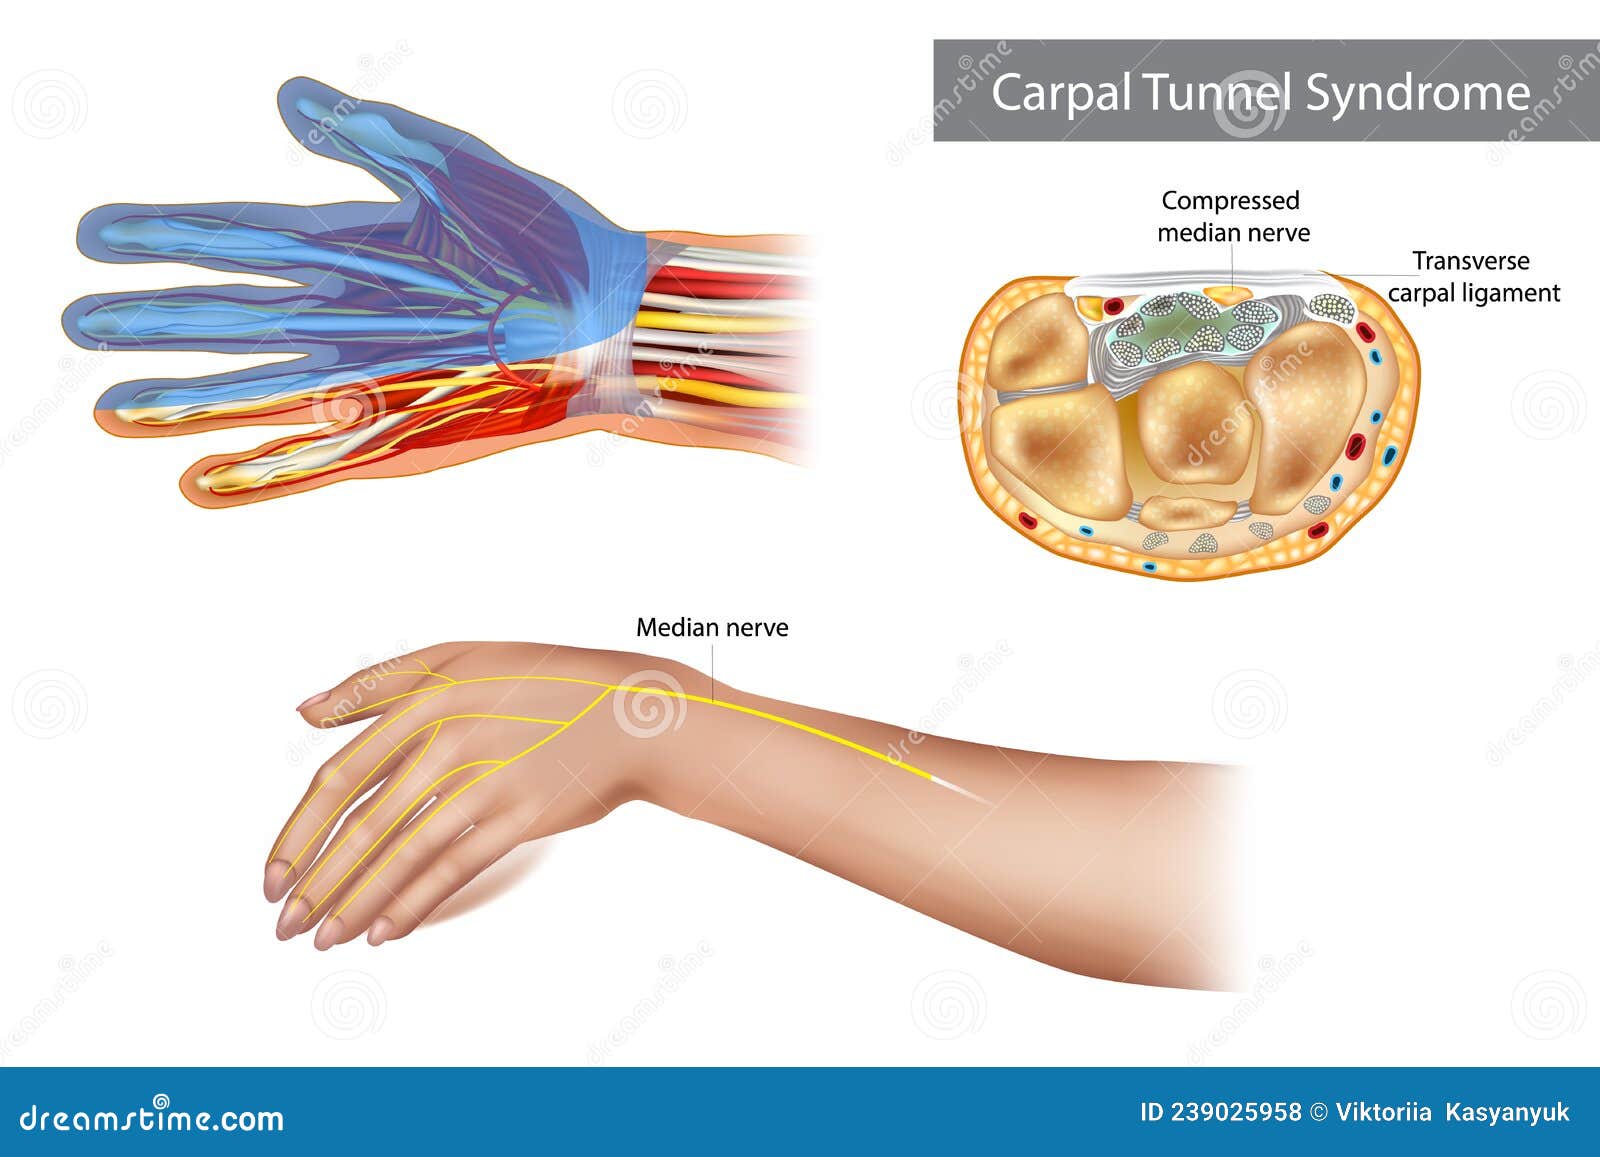 carpal tunnel syndrome. compressed median nerve. anatomy of the carpal tunnel, showing the median nerve.